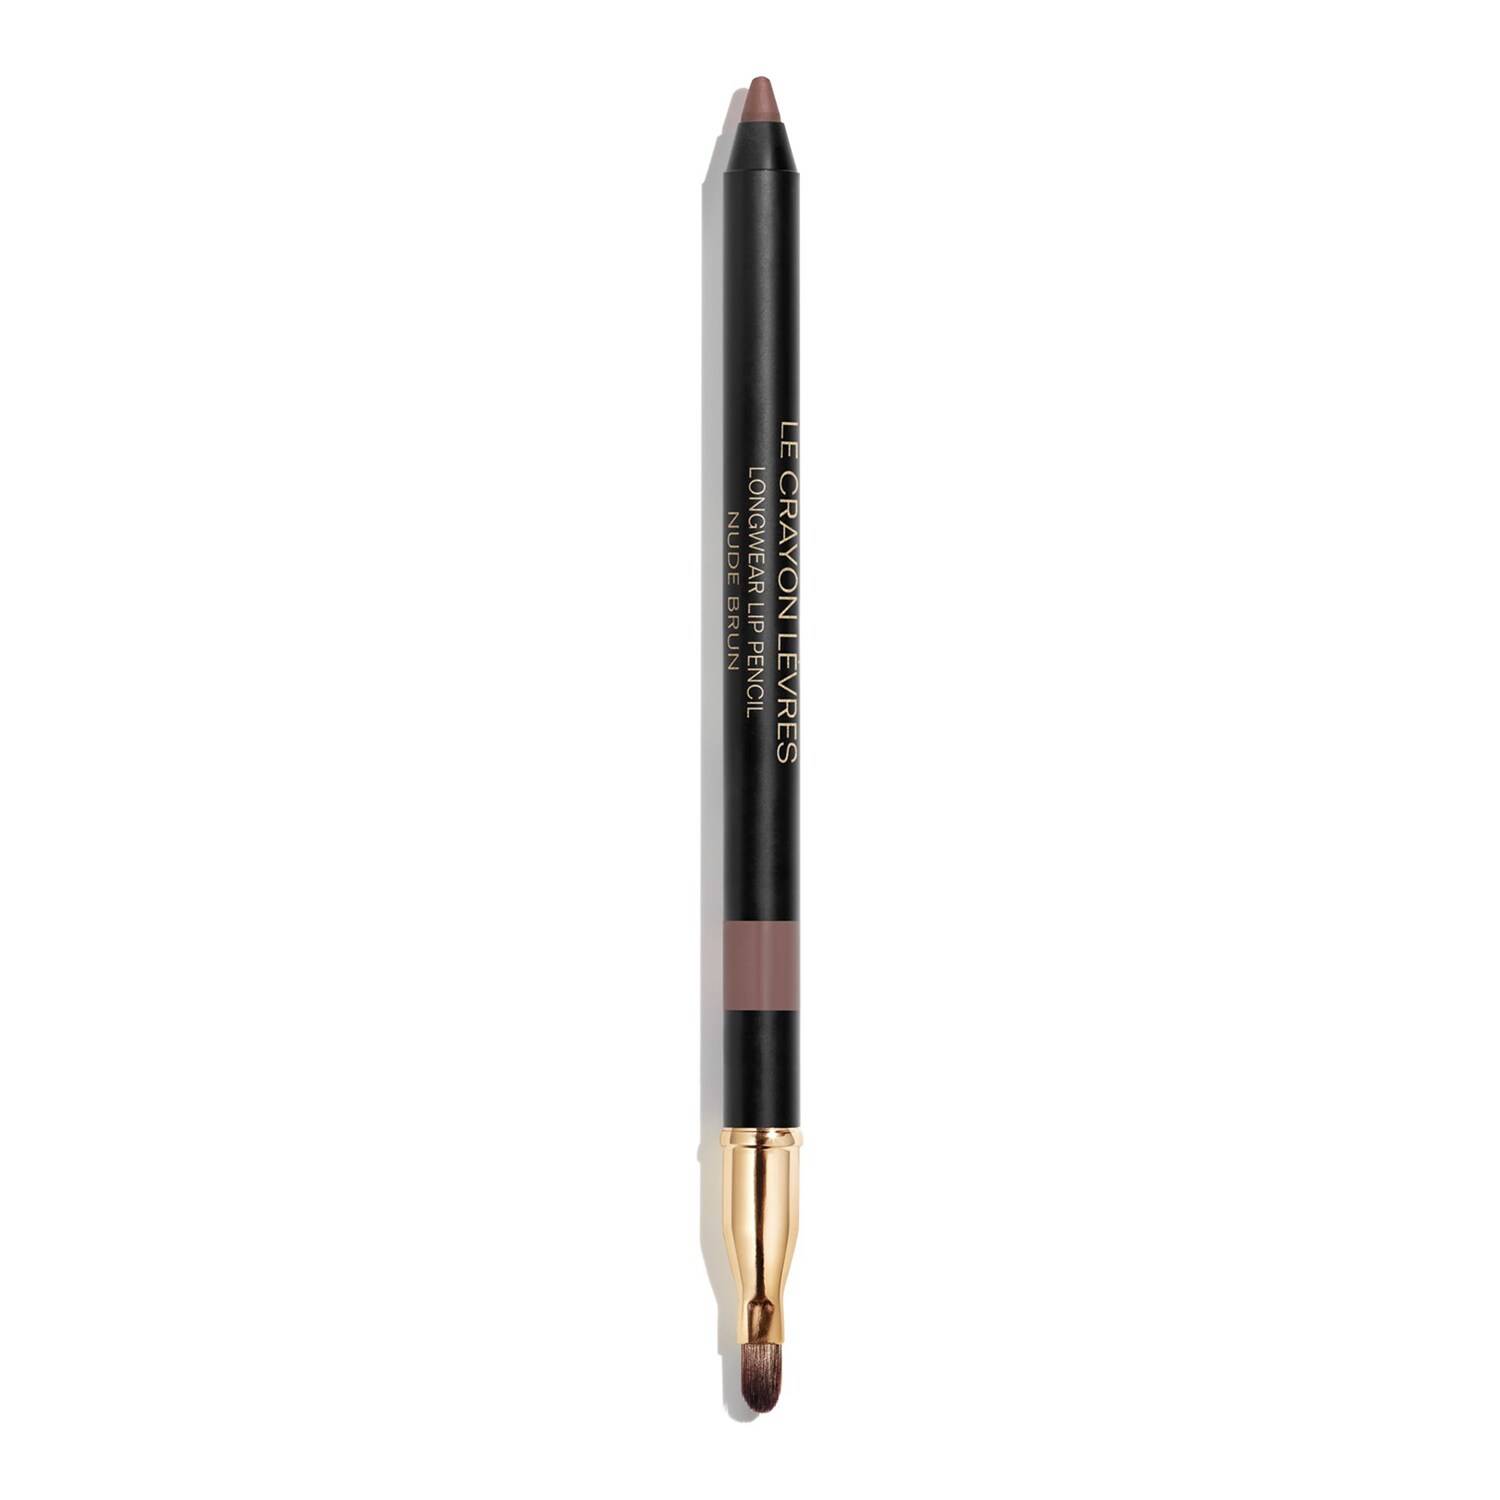 Chanel Le Crayon Levres - Longwear Lip Pencil 162 Nude Brun